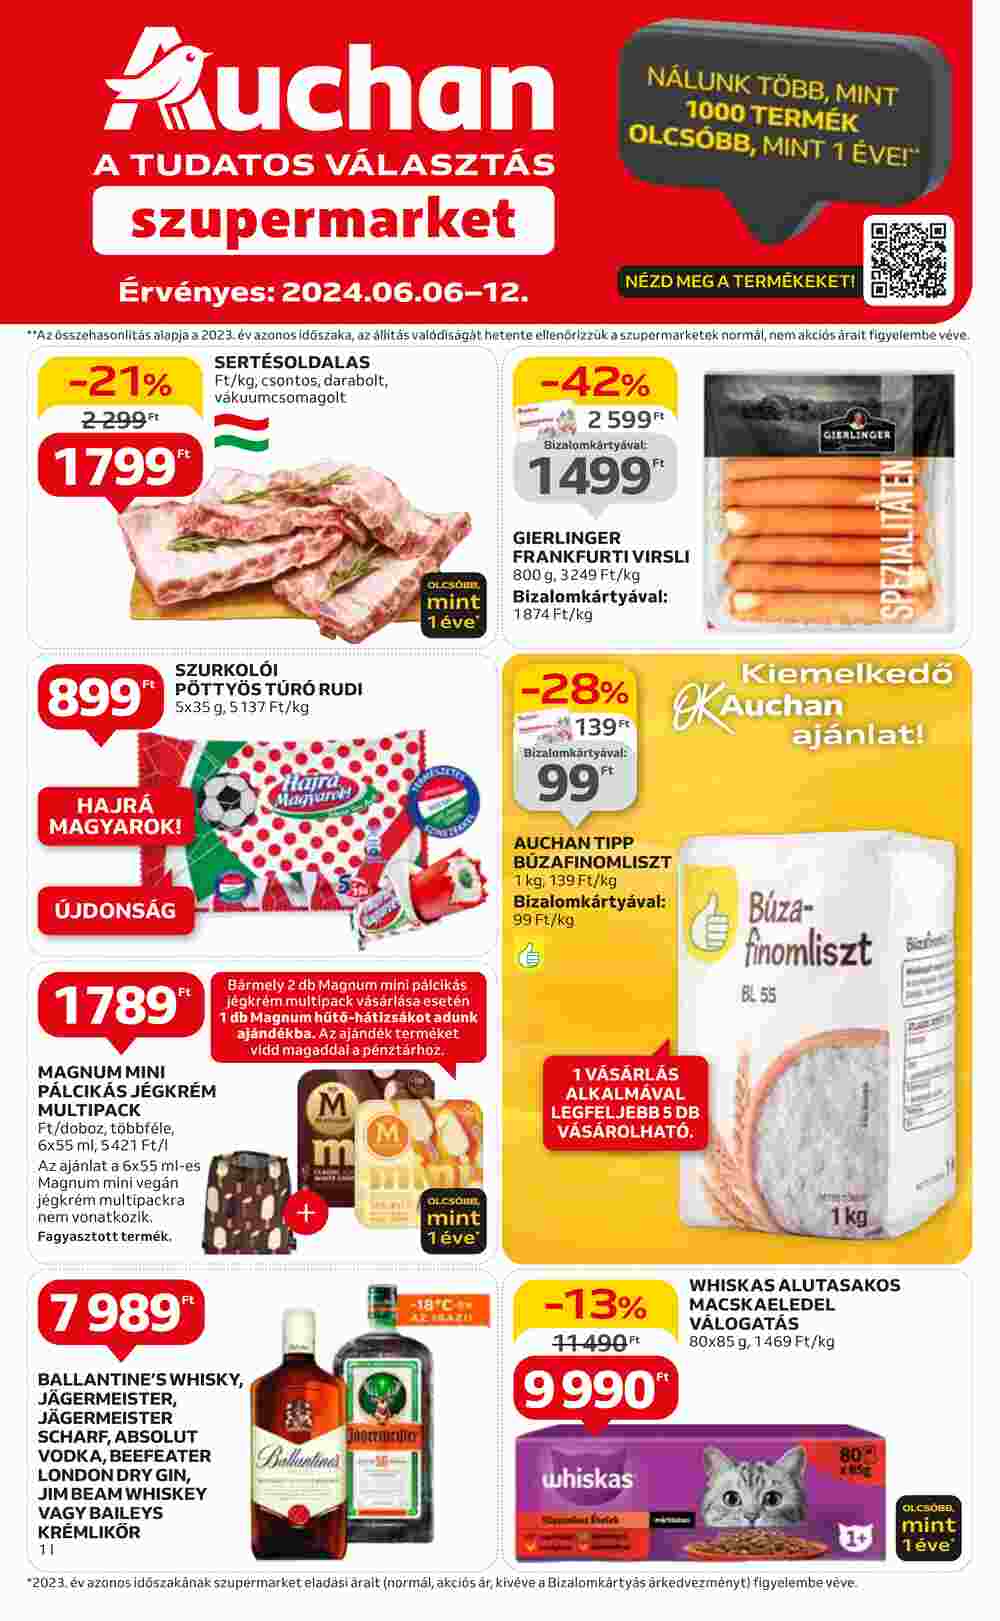 Auchan akciós újság 2024.06.06-tól - 1. oldal.